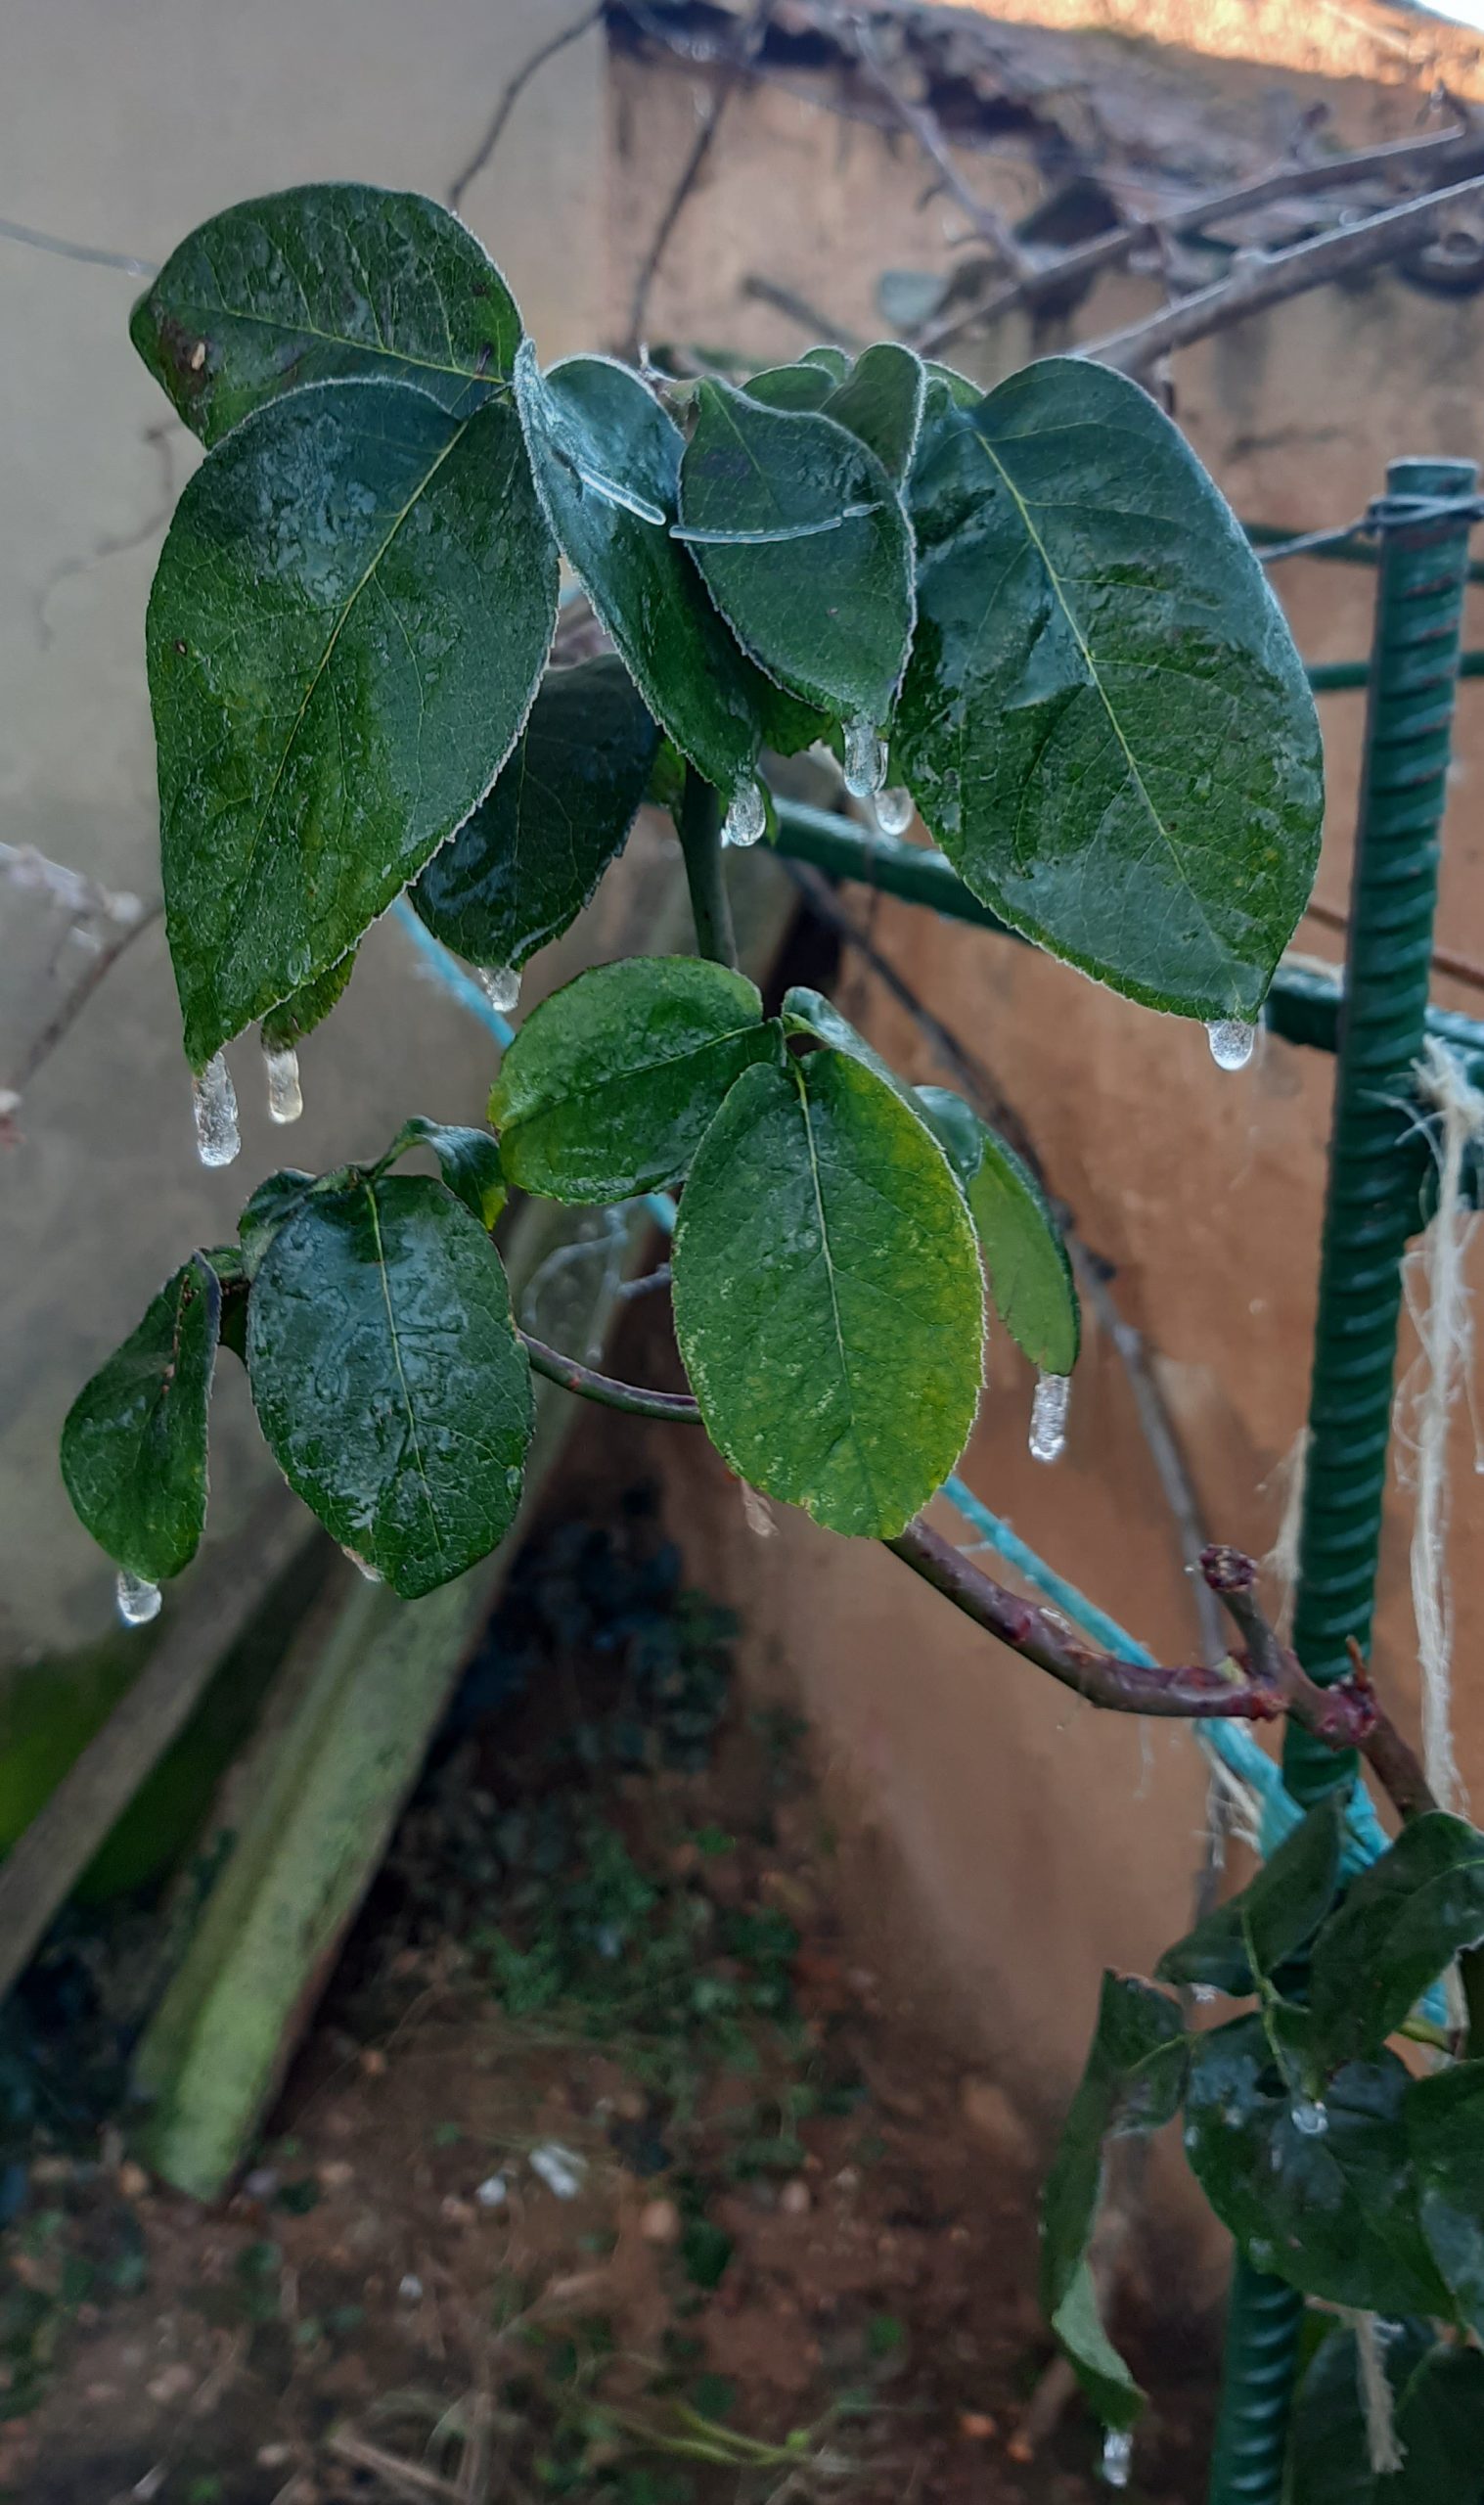 Planta cubierta con una fina capa de hielo debido a la lluvia engelante.